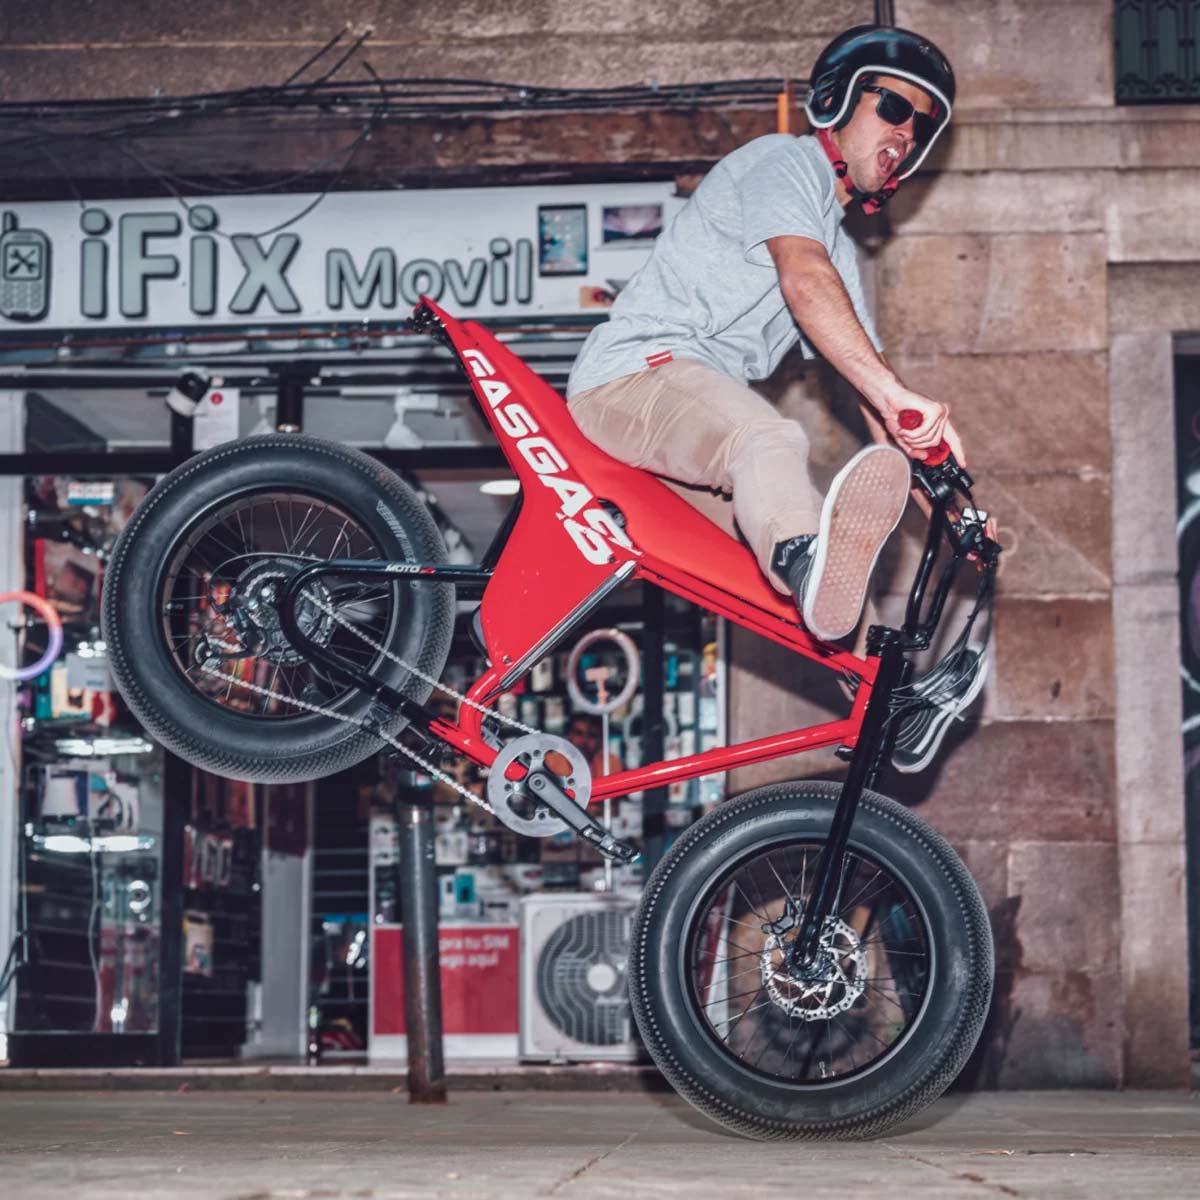 Für junge und urbane Benutzer – GASGAS MOTO verspricht mehr Adrenalin auf dem E-Bike Markt